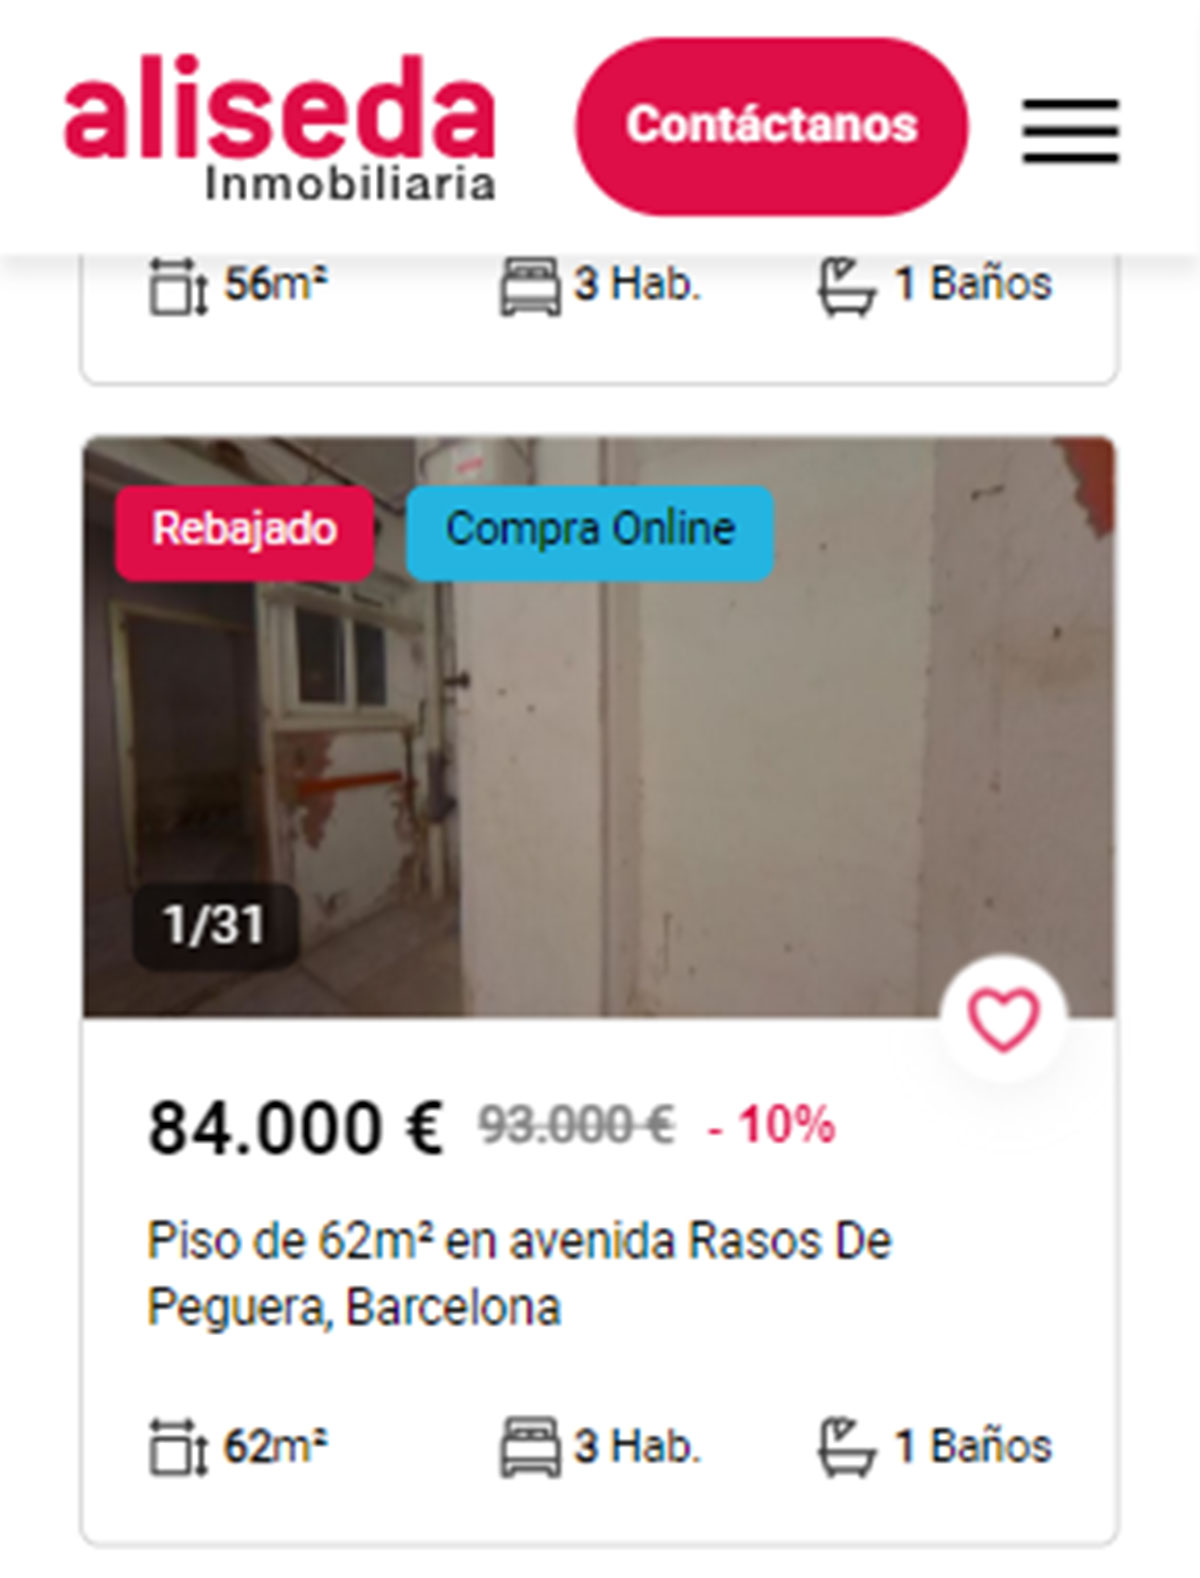 Piso en Barcelona por 83.000 euros